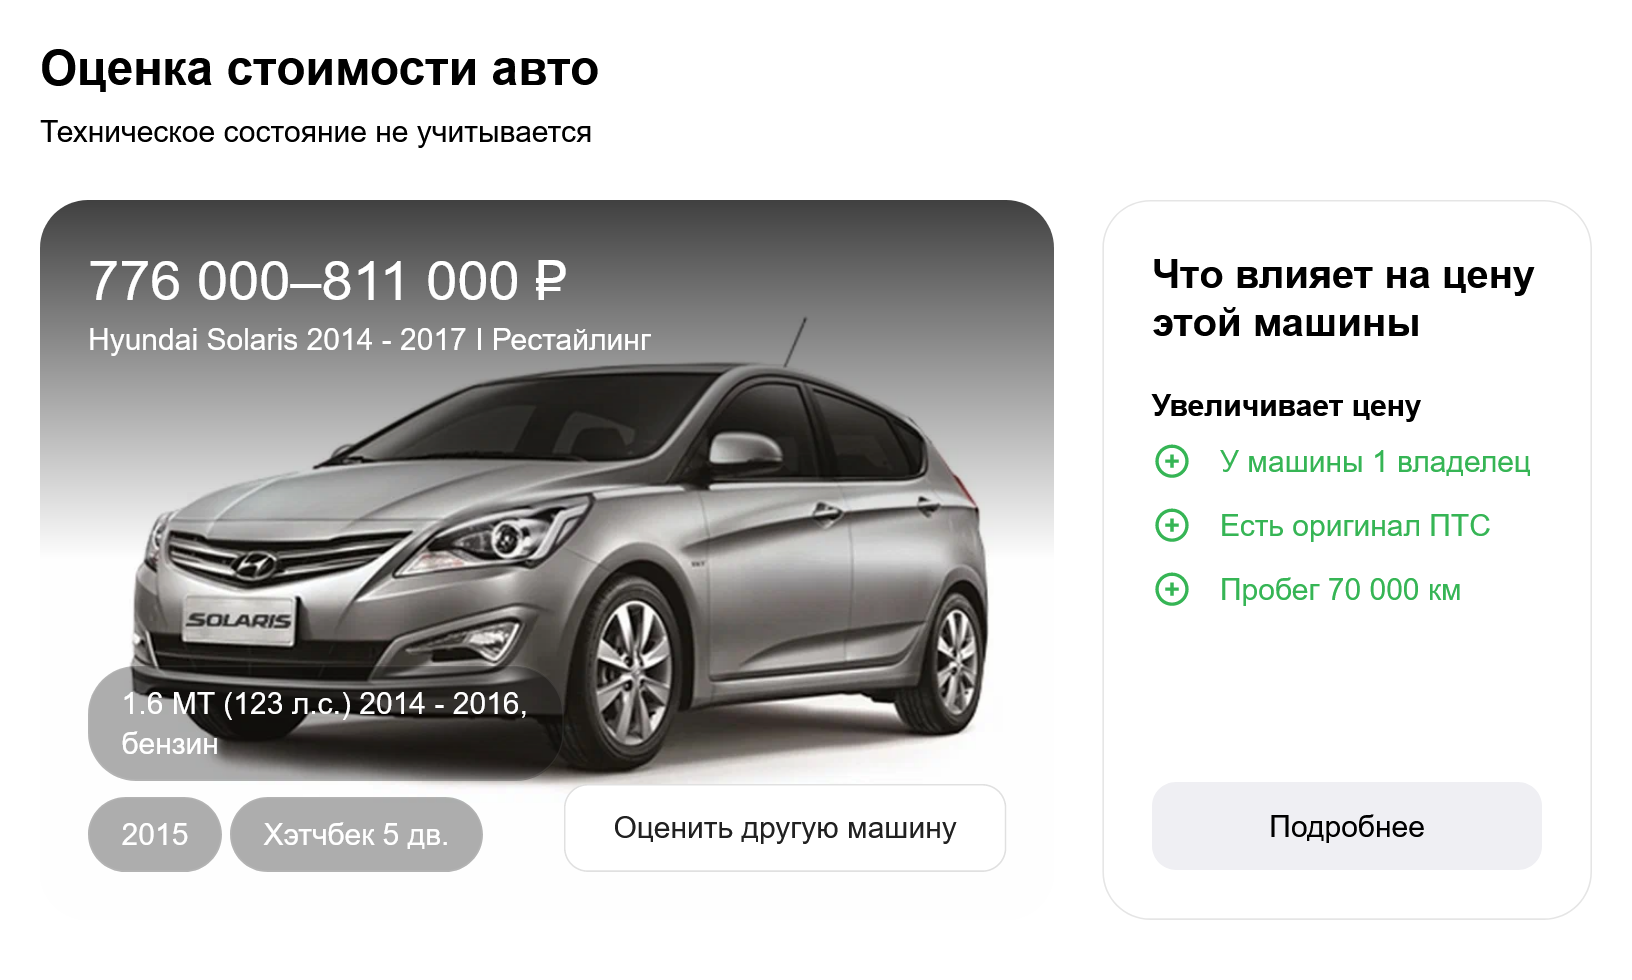 Расчет рыночной стоимости на примере автомобиля Хендай Солярис, первый рестайлинг. Источник: auto.ru